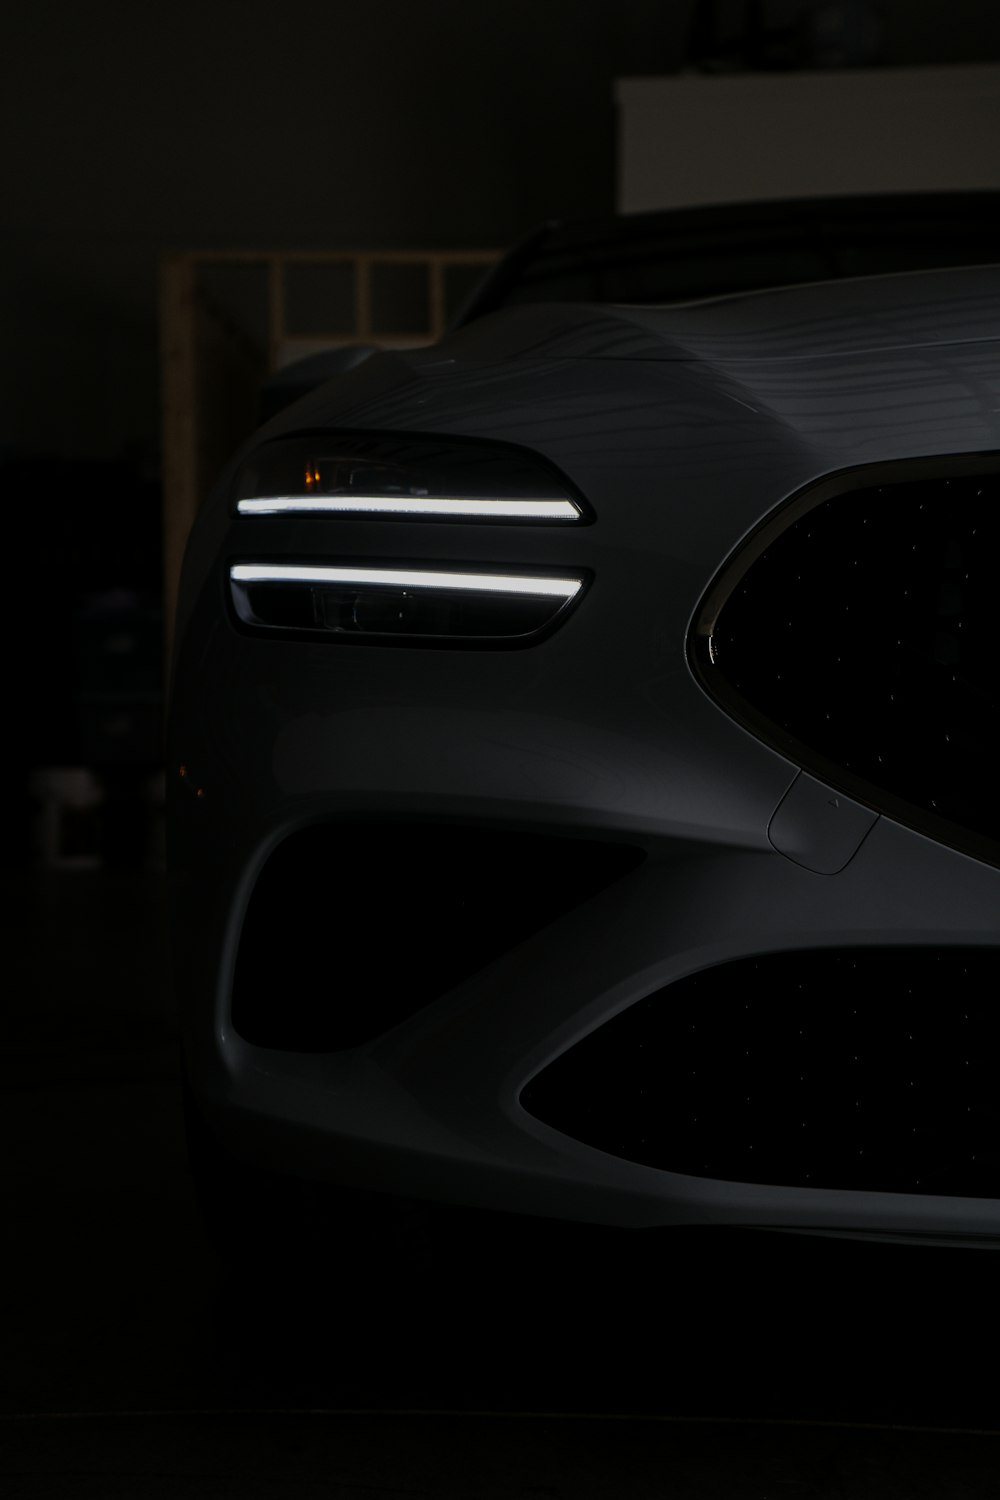 a close up of a car in a dark room